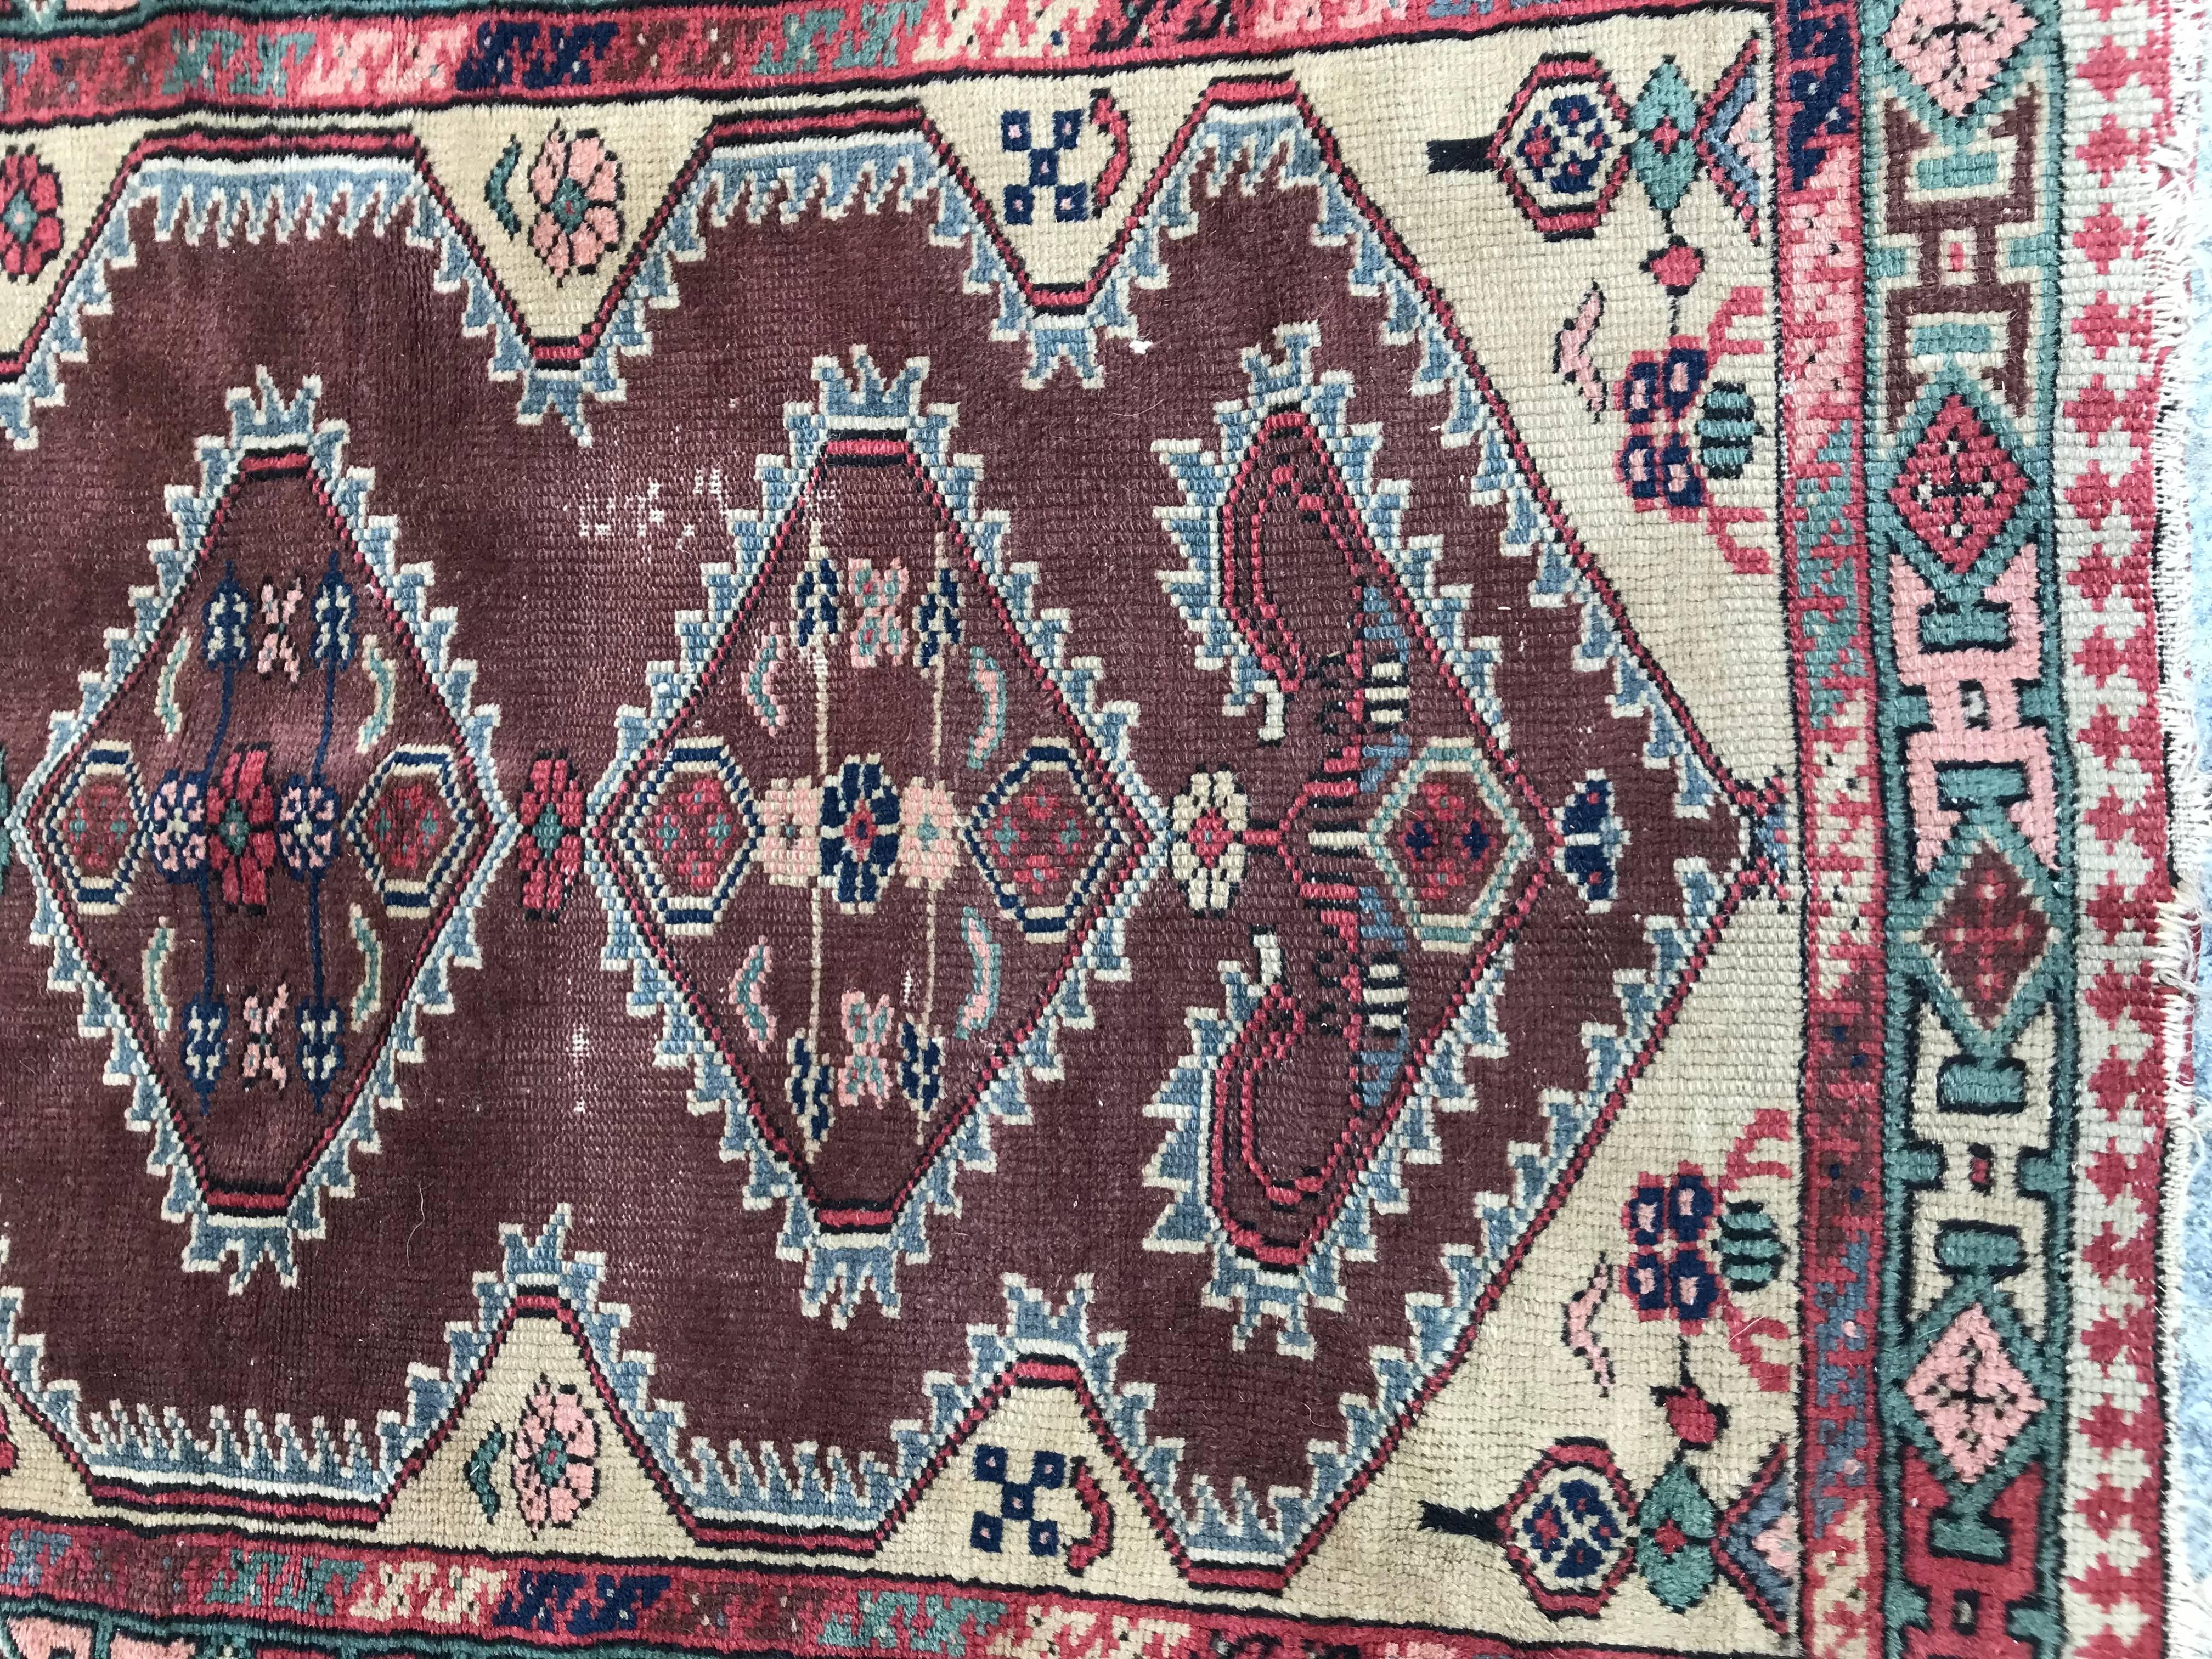 Schöne türkische Teppich mit schönen geometrischen Design und schöne Farben mit lila, gelb, grün, rosa und blau, Anfang des 20. Jahrhunderts, komplett handgeknüpft mit Wolle Samt auf Baumwollbasis.

✨✨✨
